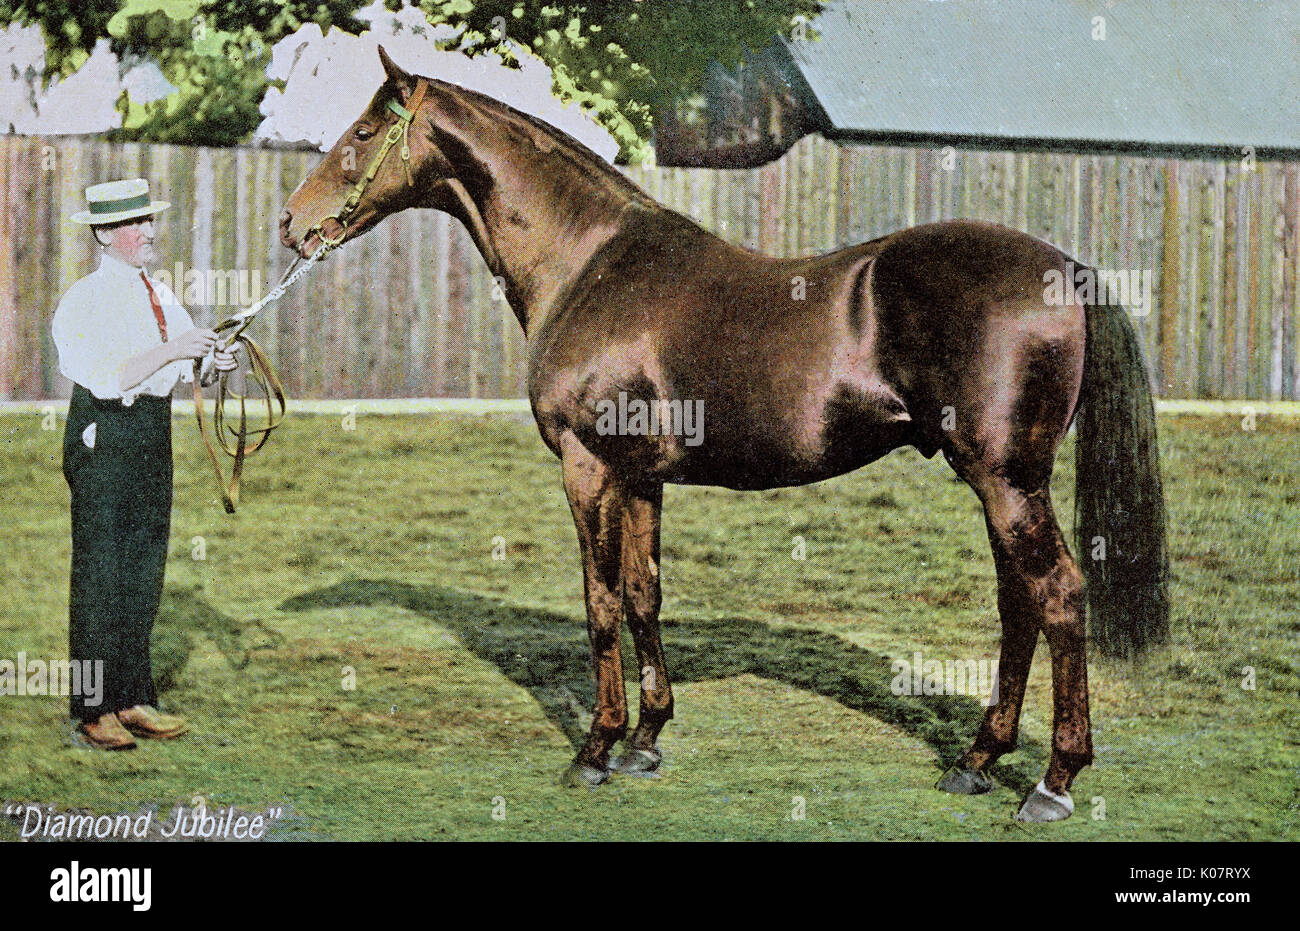 Diamond Jubilee (1897-1923), Meister Rennpferd, Besitz des Prinzen von Wales, hier mit einem Bräutigam gesehen. Datum: 1900 Stockfoto